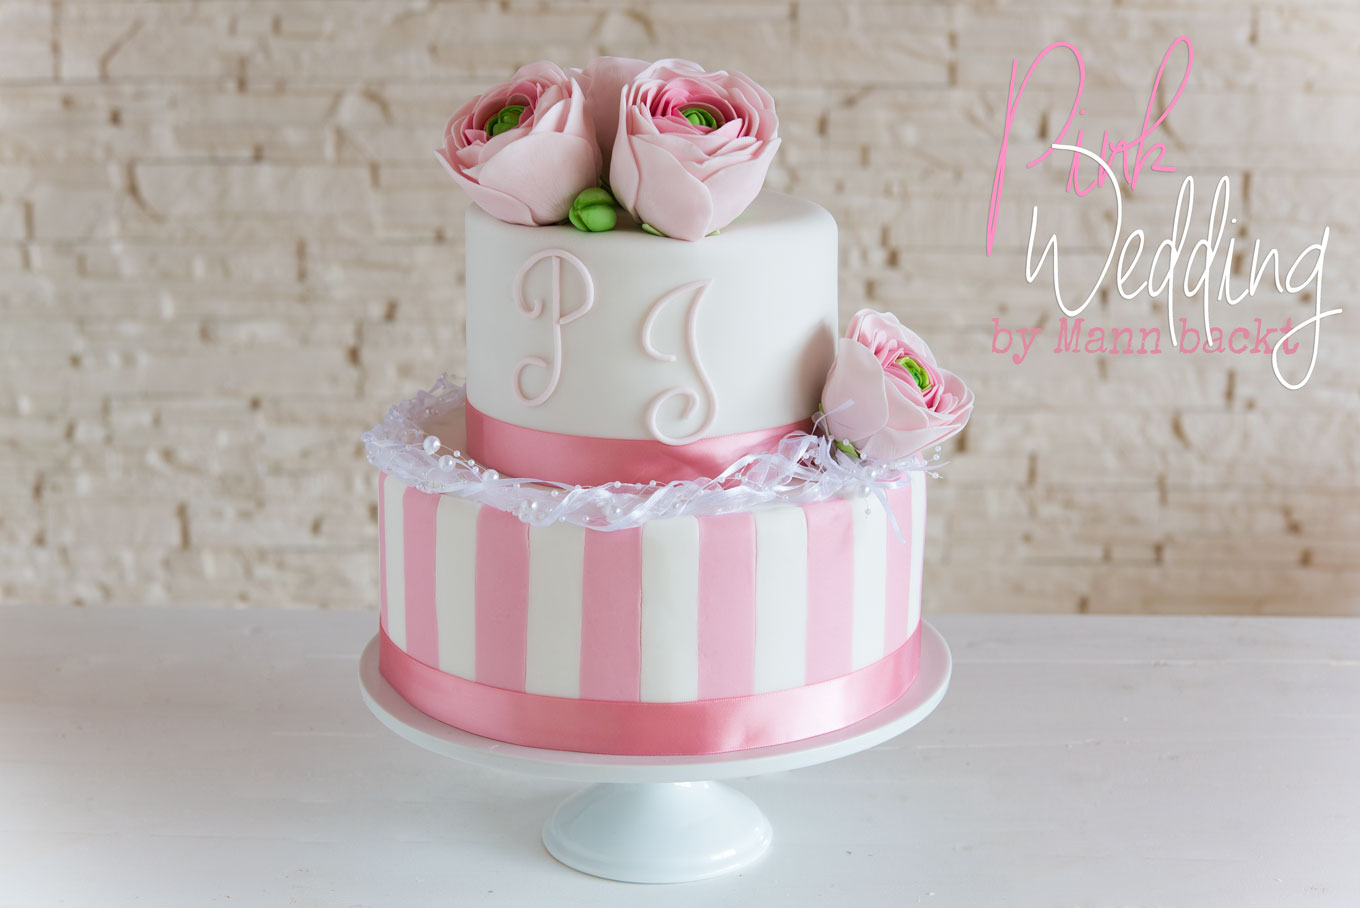 Mann-backt-Wedding-cake-Hochzeitstorte-Pink-Streifen-Ranunkel-Sugar-Art